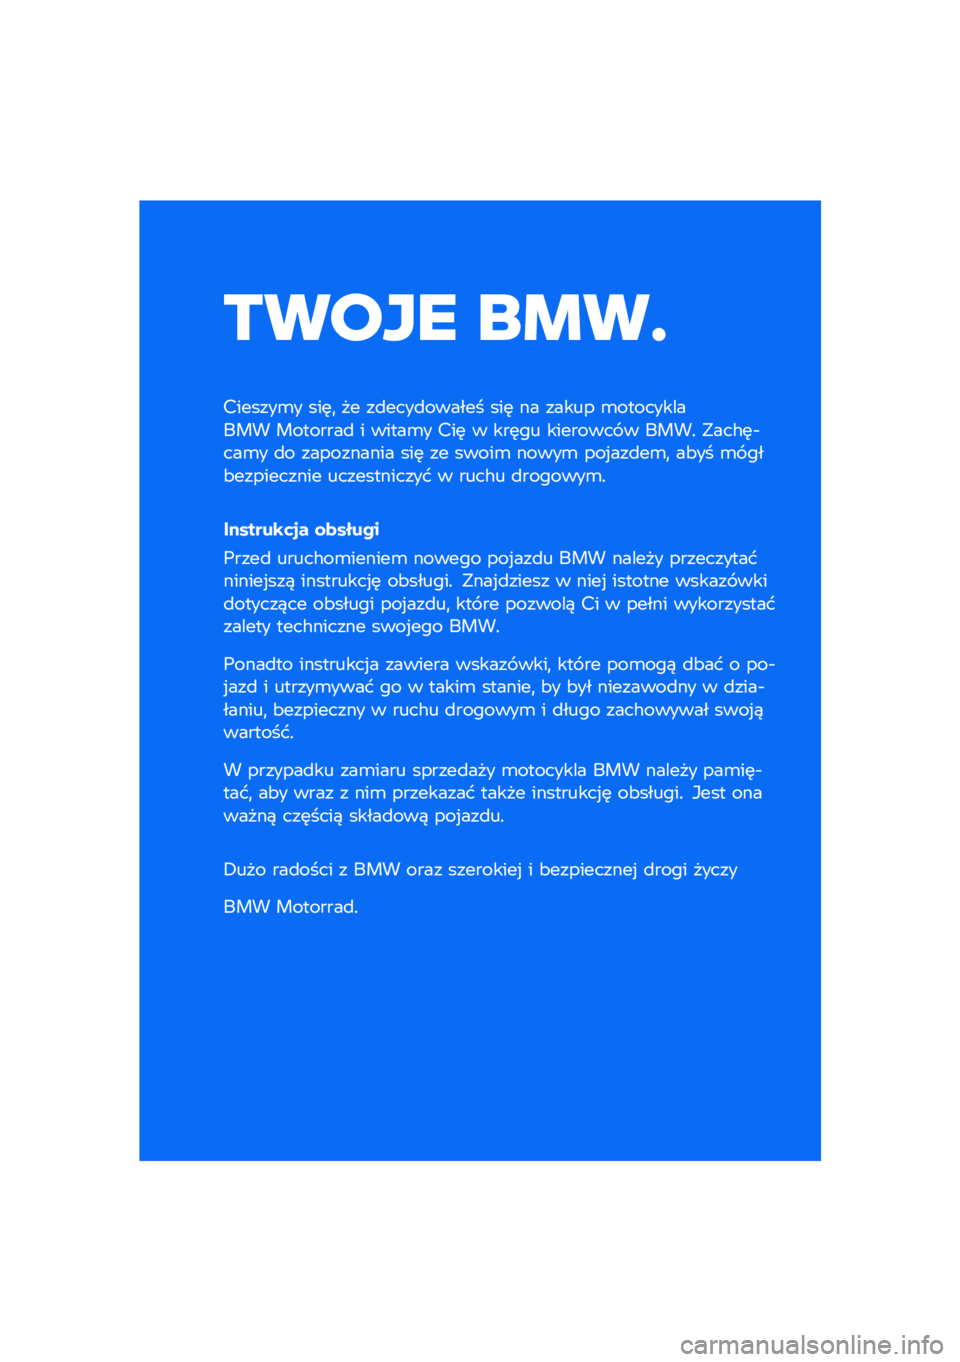 BMW MOTORRAD R NINE T SCRAMBLER 2020  Instrukcja obsługi (in Polish) ����� ��\b��	
�������\b� ���	�
 �� ��
����
������ ���	 �� ����� �\b����������� ��������
 � �����\b� ���	 � ���	�� �������� �